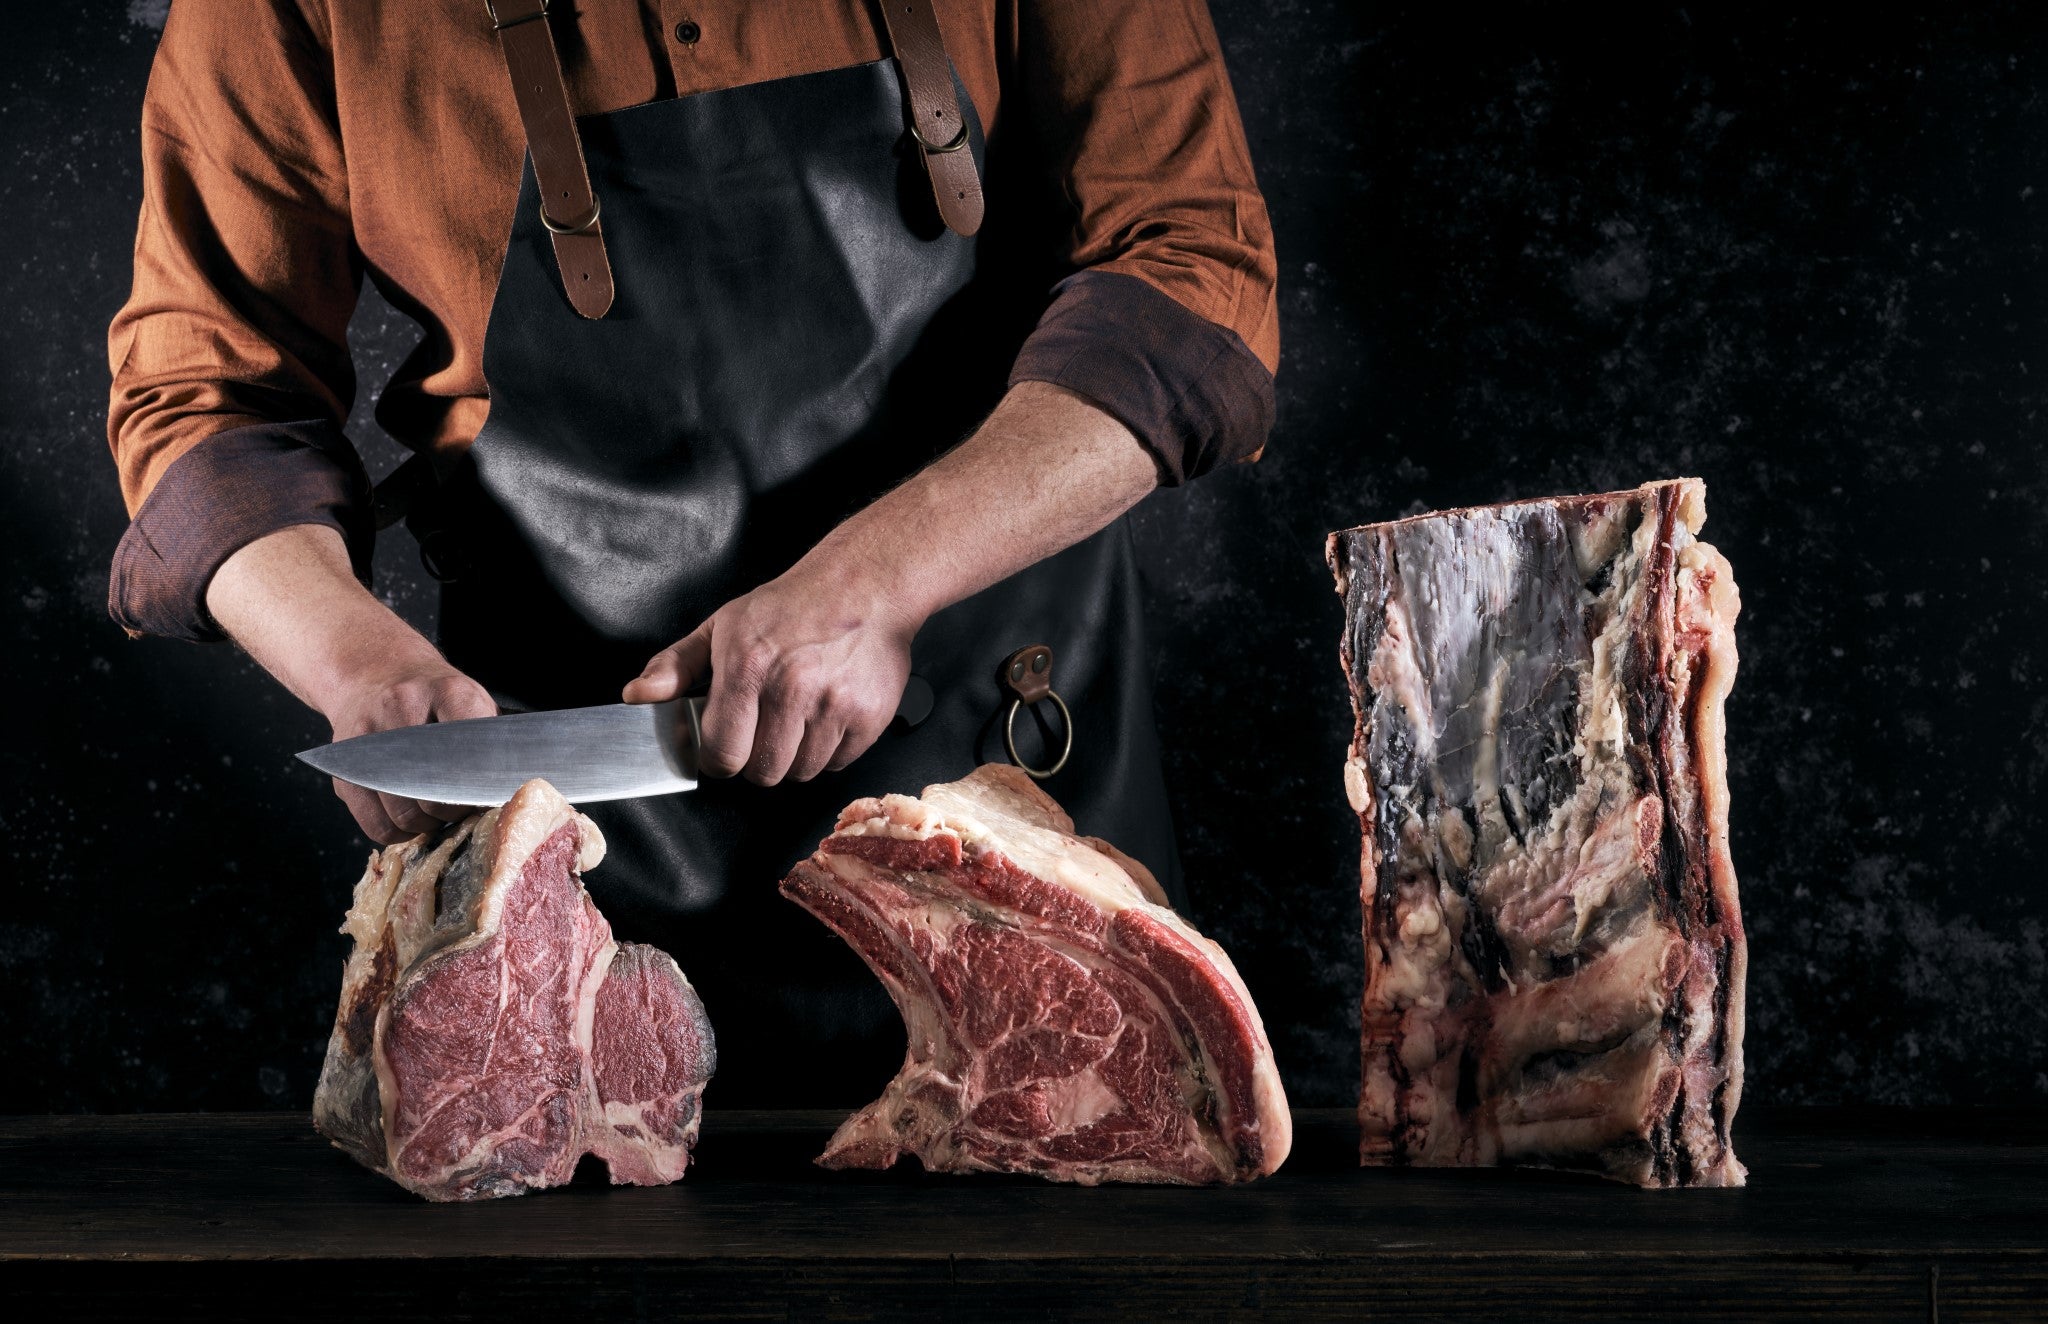 EDELCUT - Wir veredeln die Rindfleischstücke durch ein besonders langes Trockenreifeverfahren von 8 Wochen.